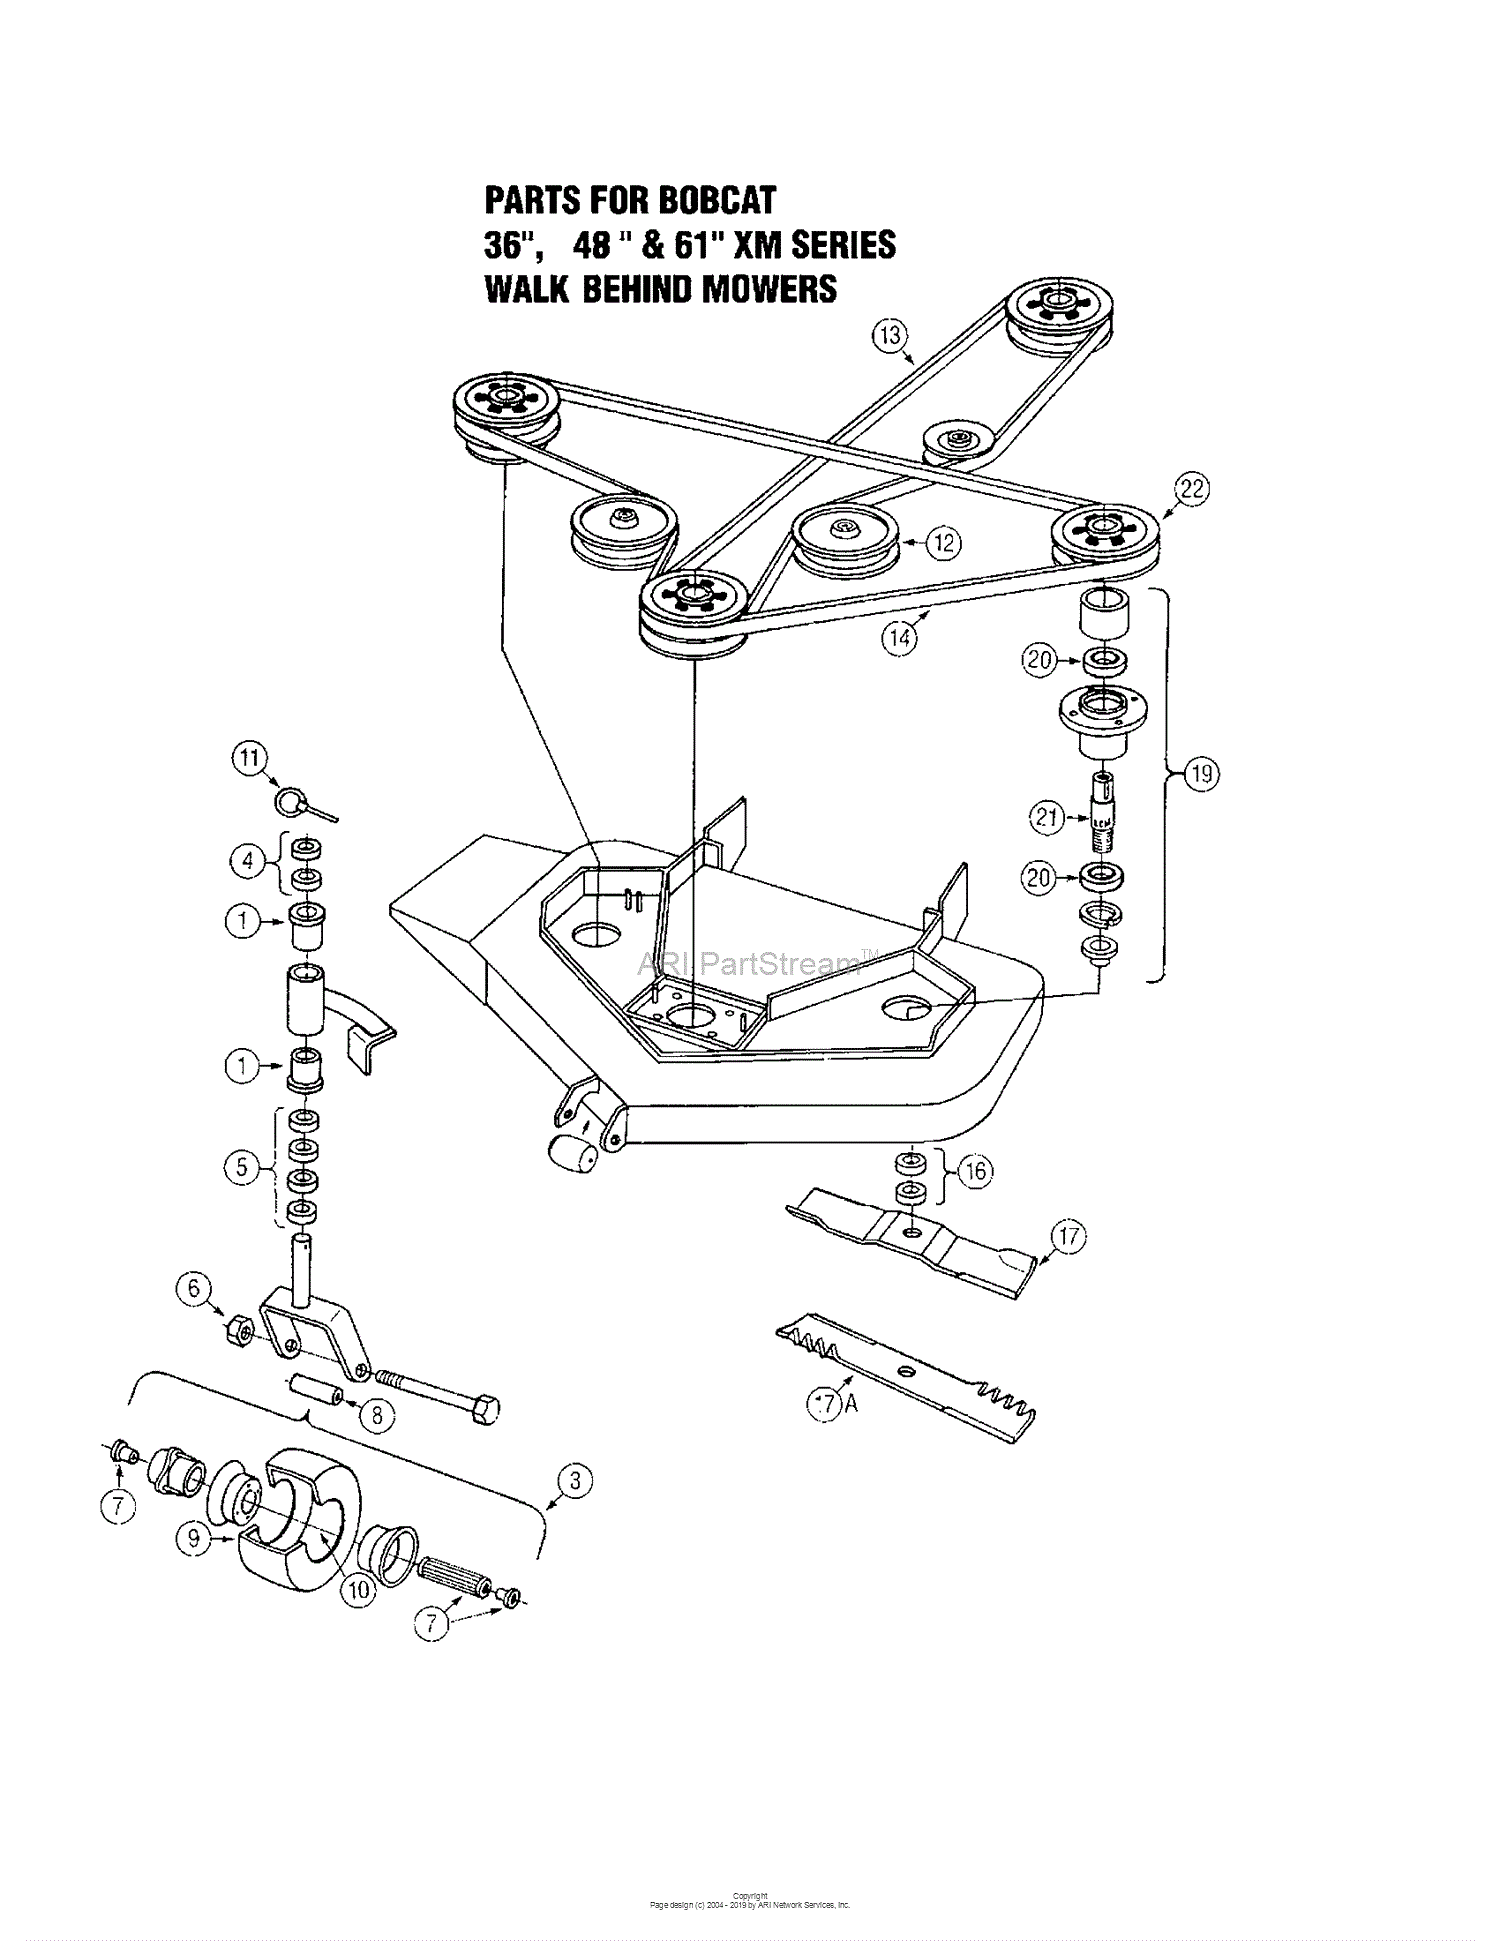 Oregon BobCat Parts Diagram for BOBCAT 36", 48" & 61" XM Series Walk